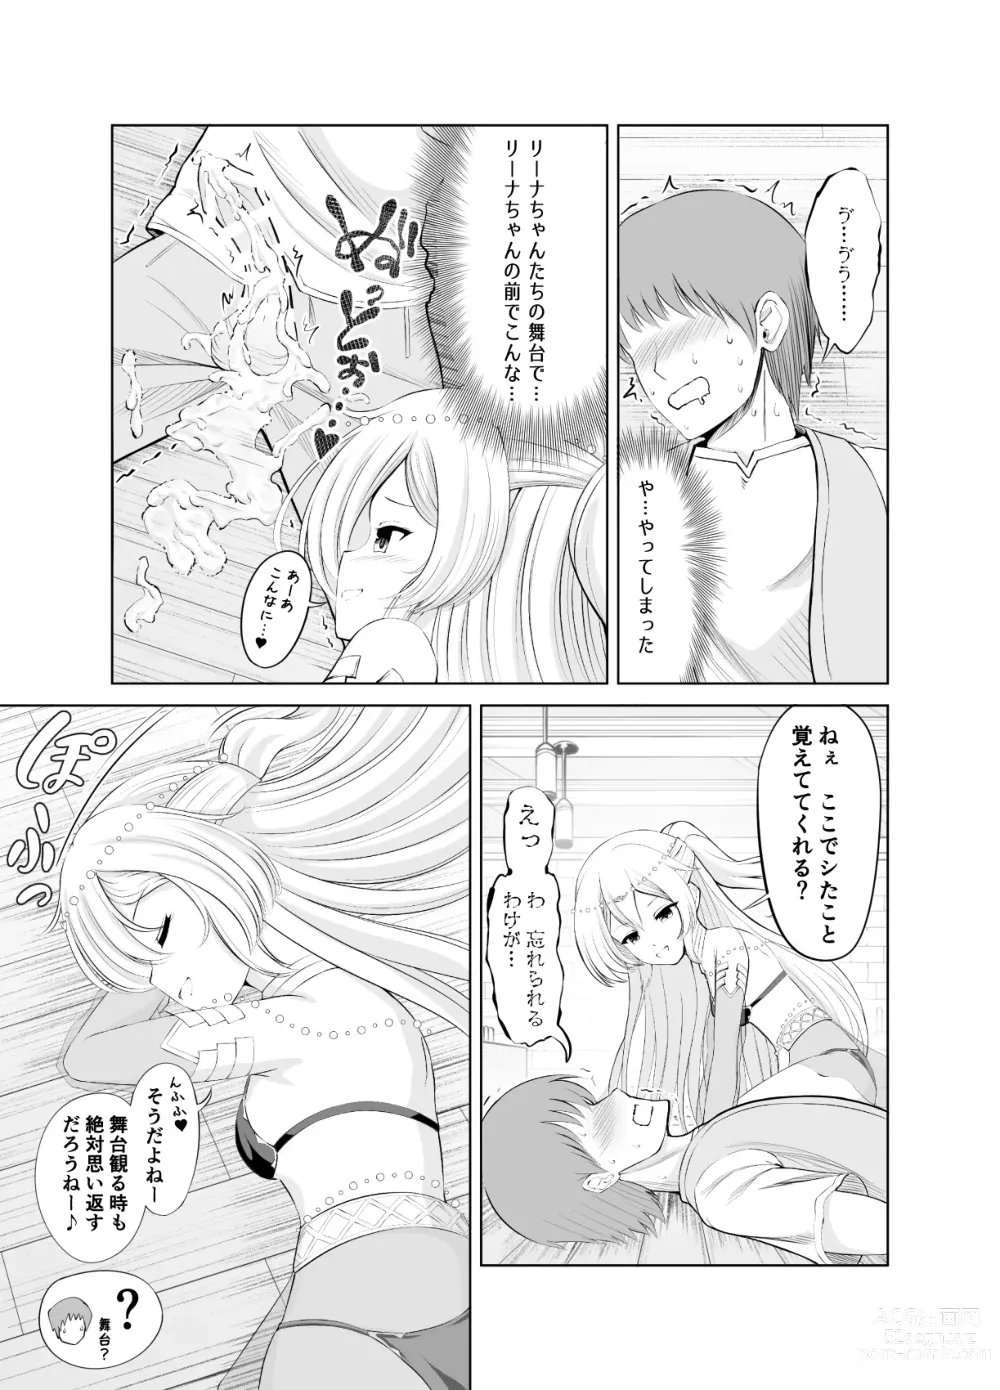 Page 7 of doujinshi Ama Zeme ~Saioshi no Koakuma Imouto-kei Odoriko ni Omocha ni Sareru Hibi no Hitomaku~